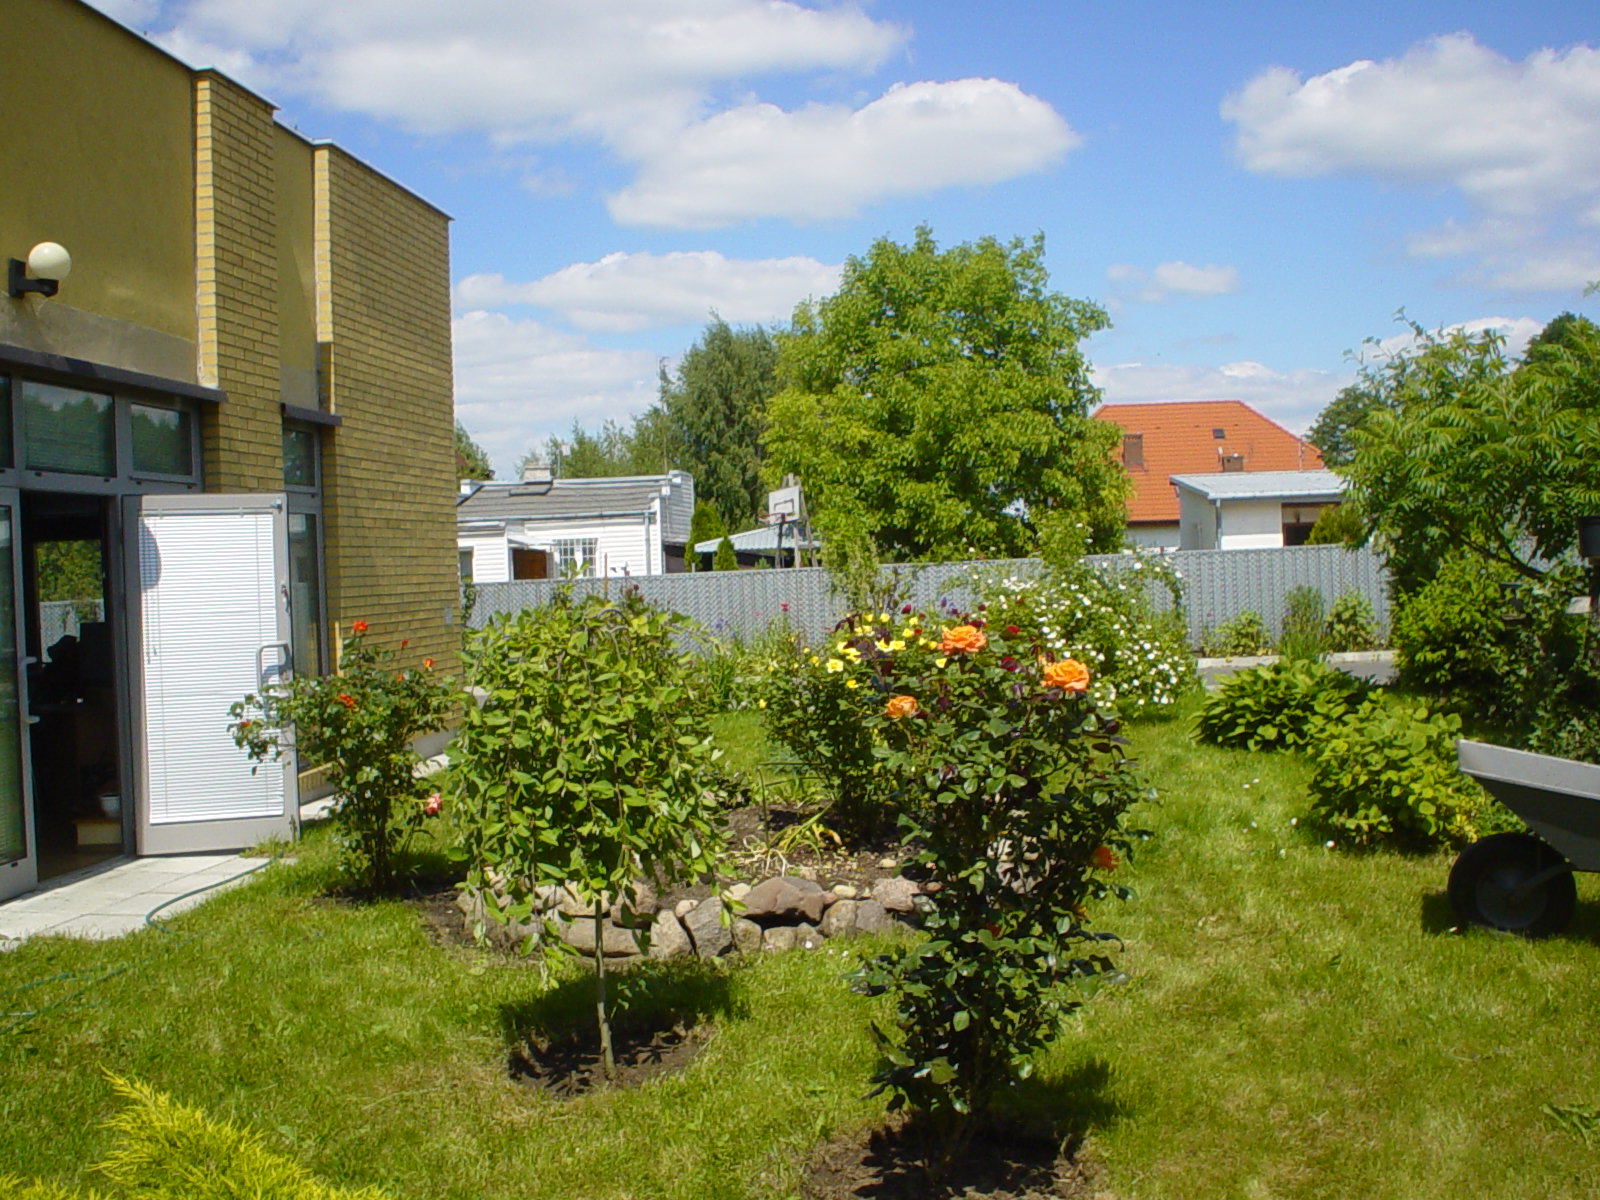 Zdjęcie ogrodu znajdującego się przy nowoczesnym budynku. W ogrodzie znajdują się drzewka różane.